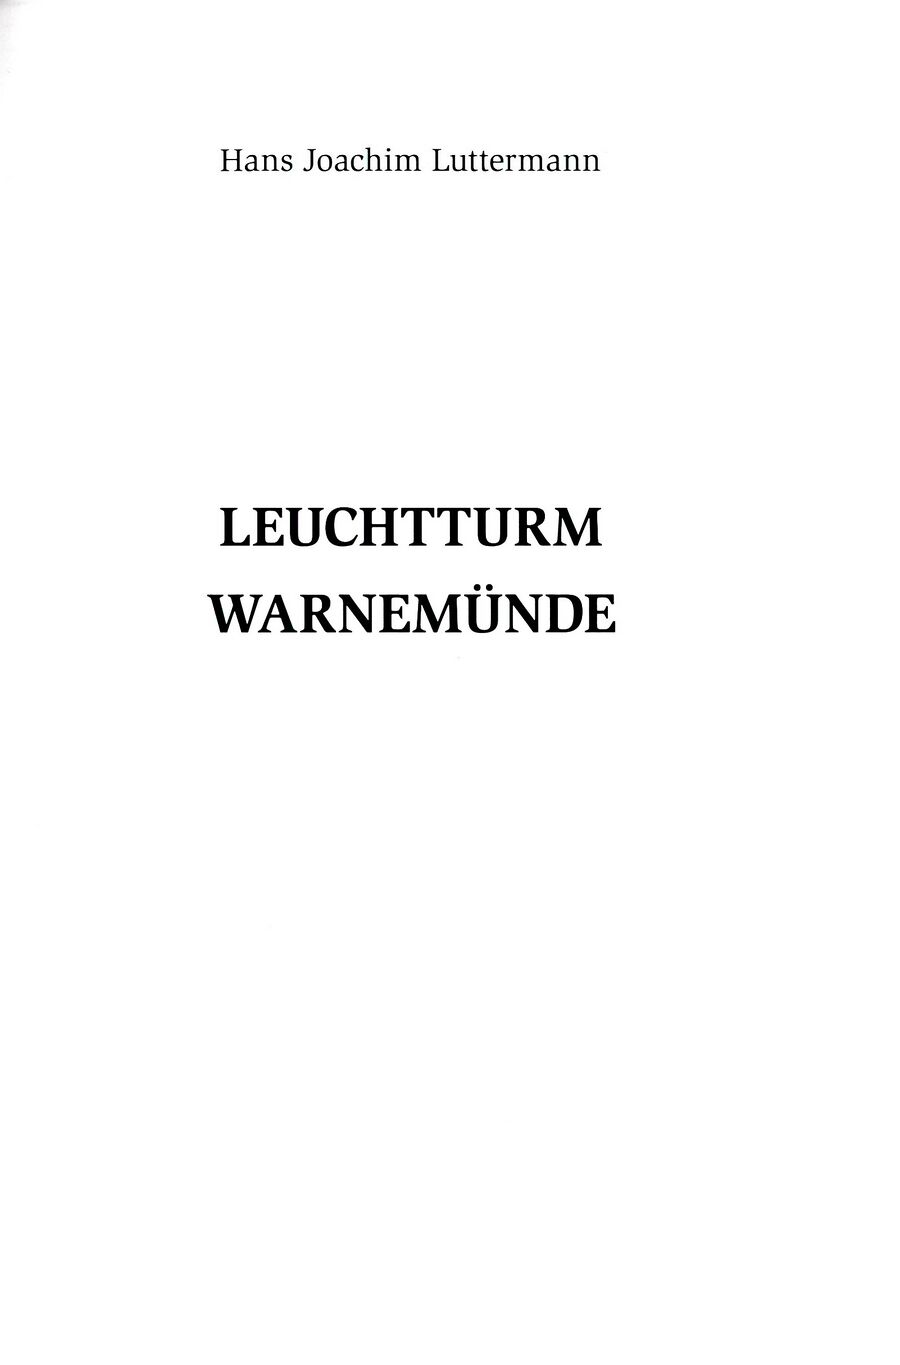 wmde Leuchtturm Luttermann 2013 003